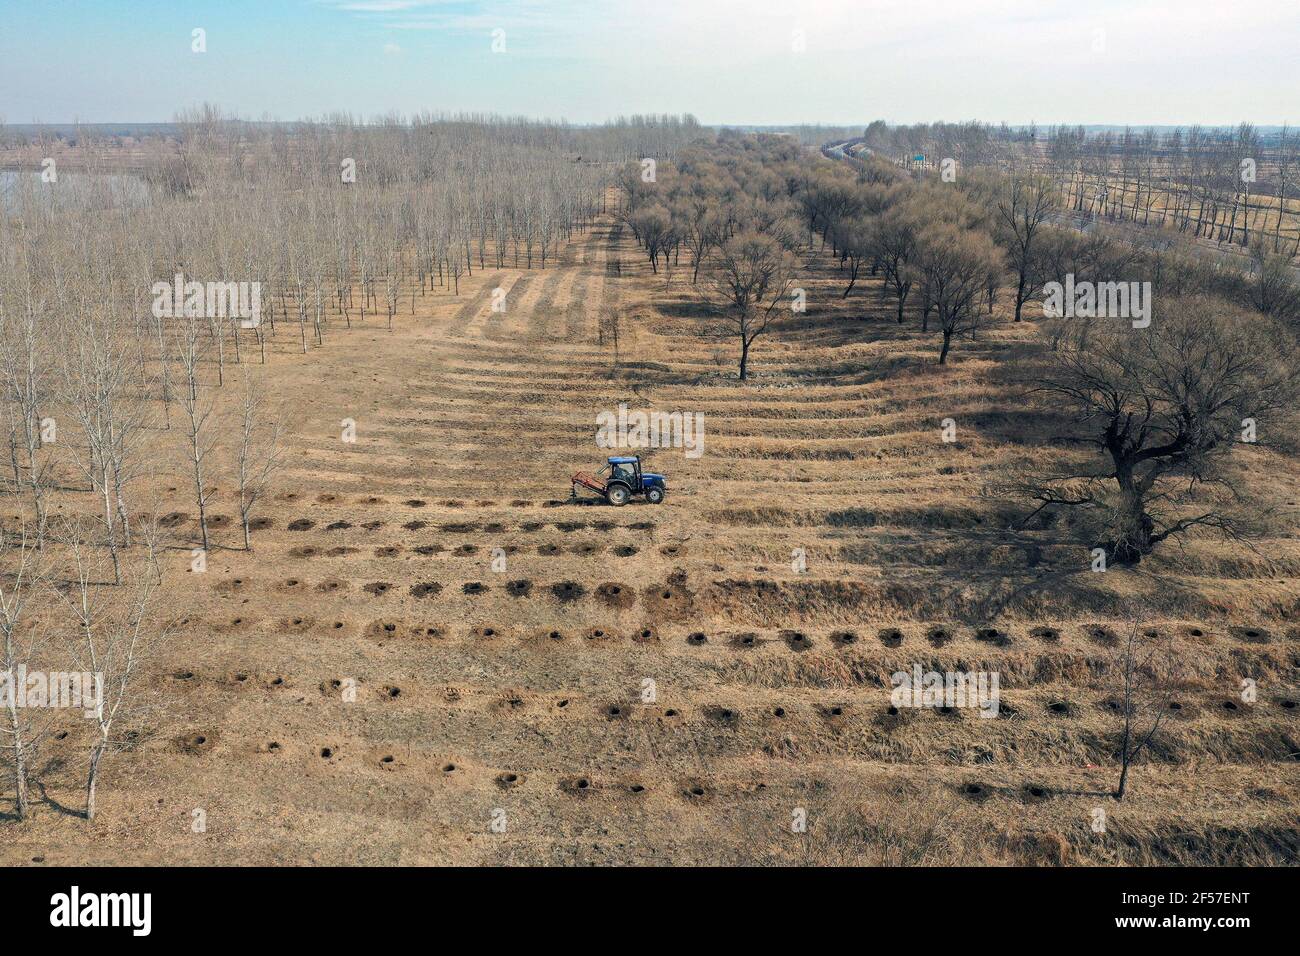 SHENYANG, CHINA - 24. MÄRZ 2021 - Luftbild eine Baumbohrmaschine wird zum Bohren von Bäumen eingesetzt. 24. März 2021, Shenyang, Provinz Liaoning, China. (Foto von Ji Zhe / Costfoto/Sipa USA) Stockfoto